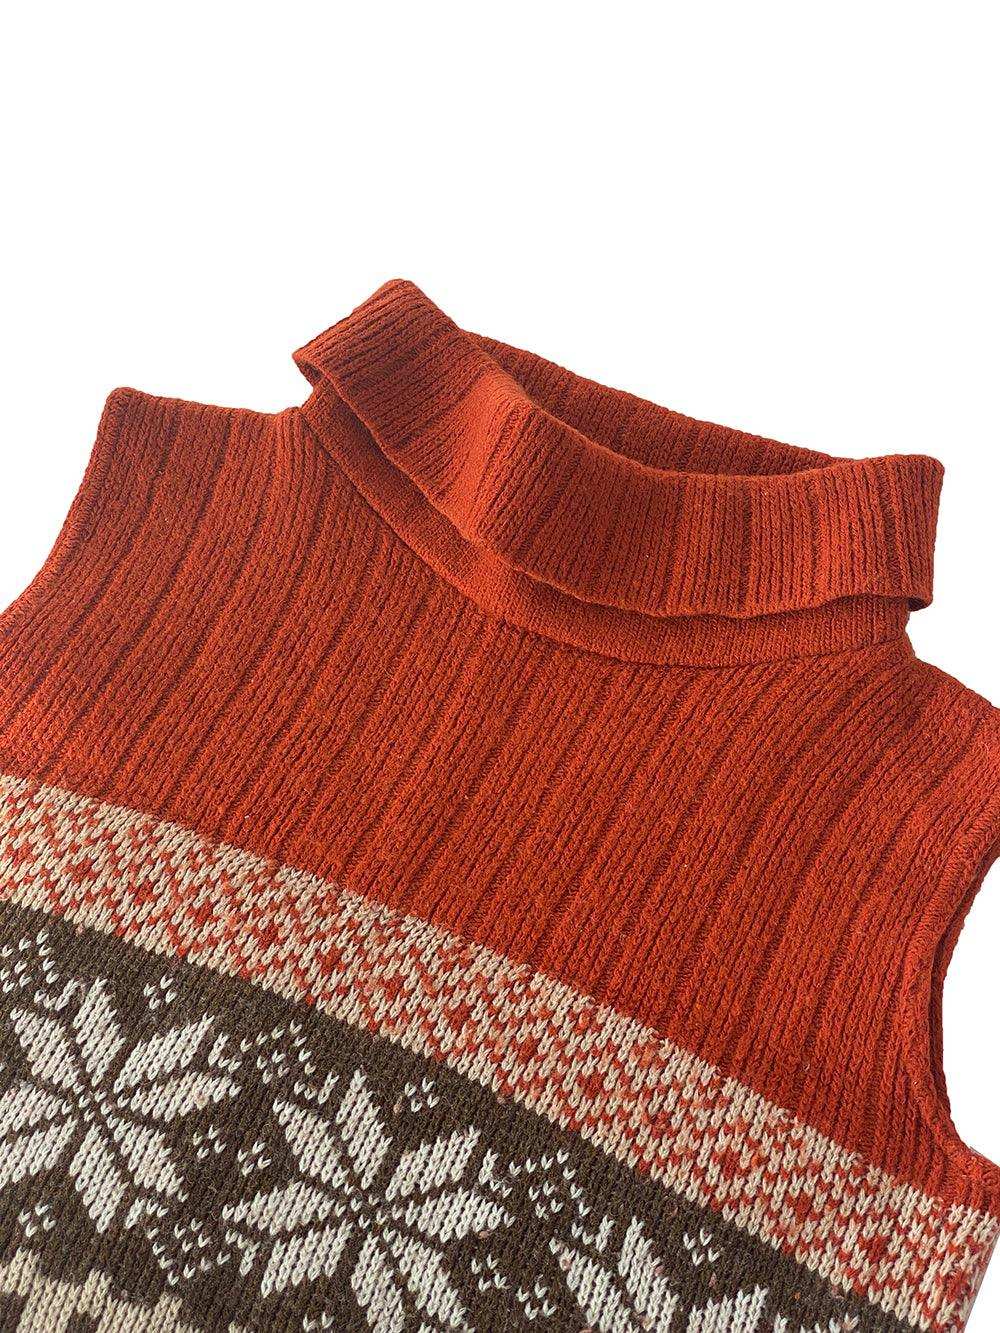 Vintage Knitted Sweater Vest - Balagan Vintage Vest 00s, 90s, knitted vest, NEW IN, vest